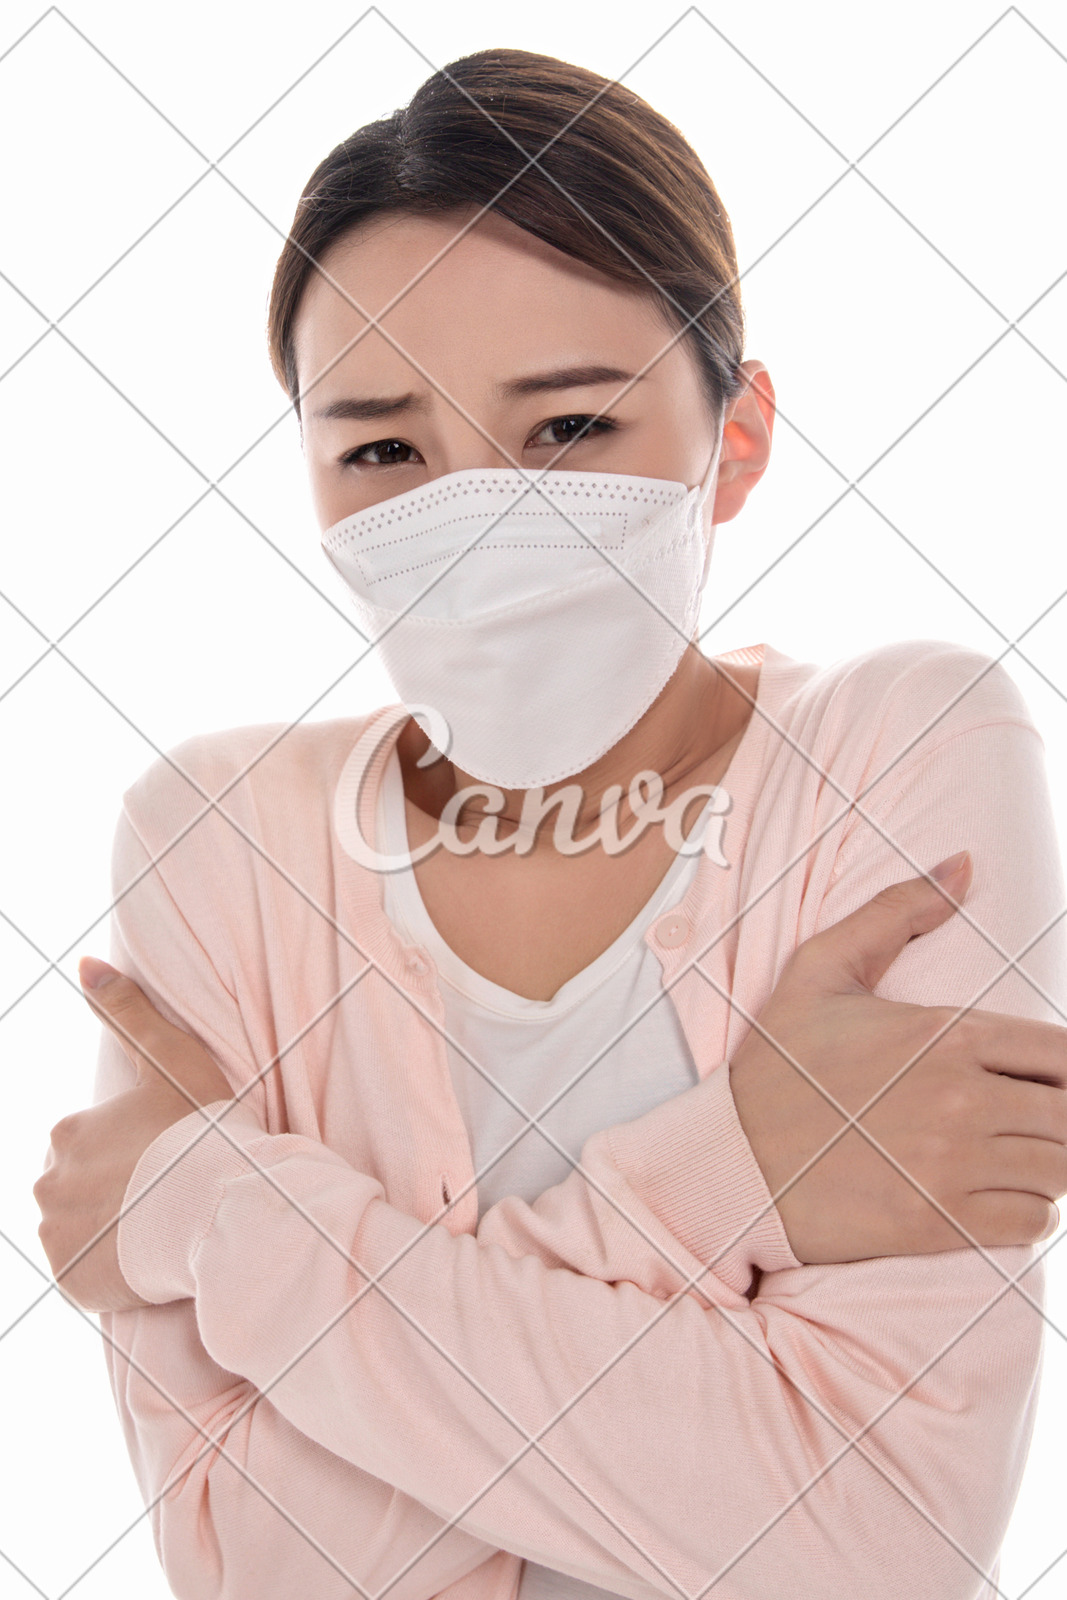 雾霾发烧细菌口罩传染病成年人肖像预防环境污染白色背景